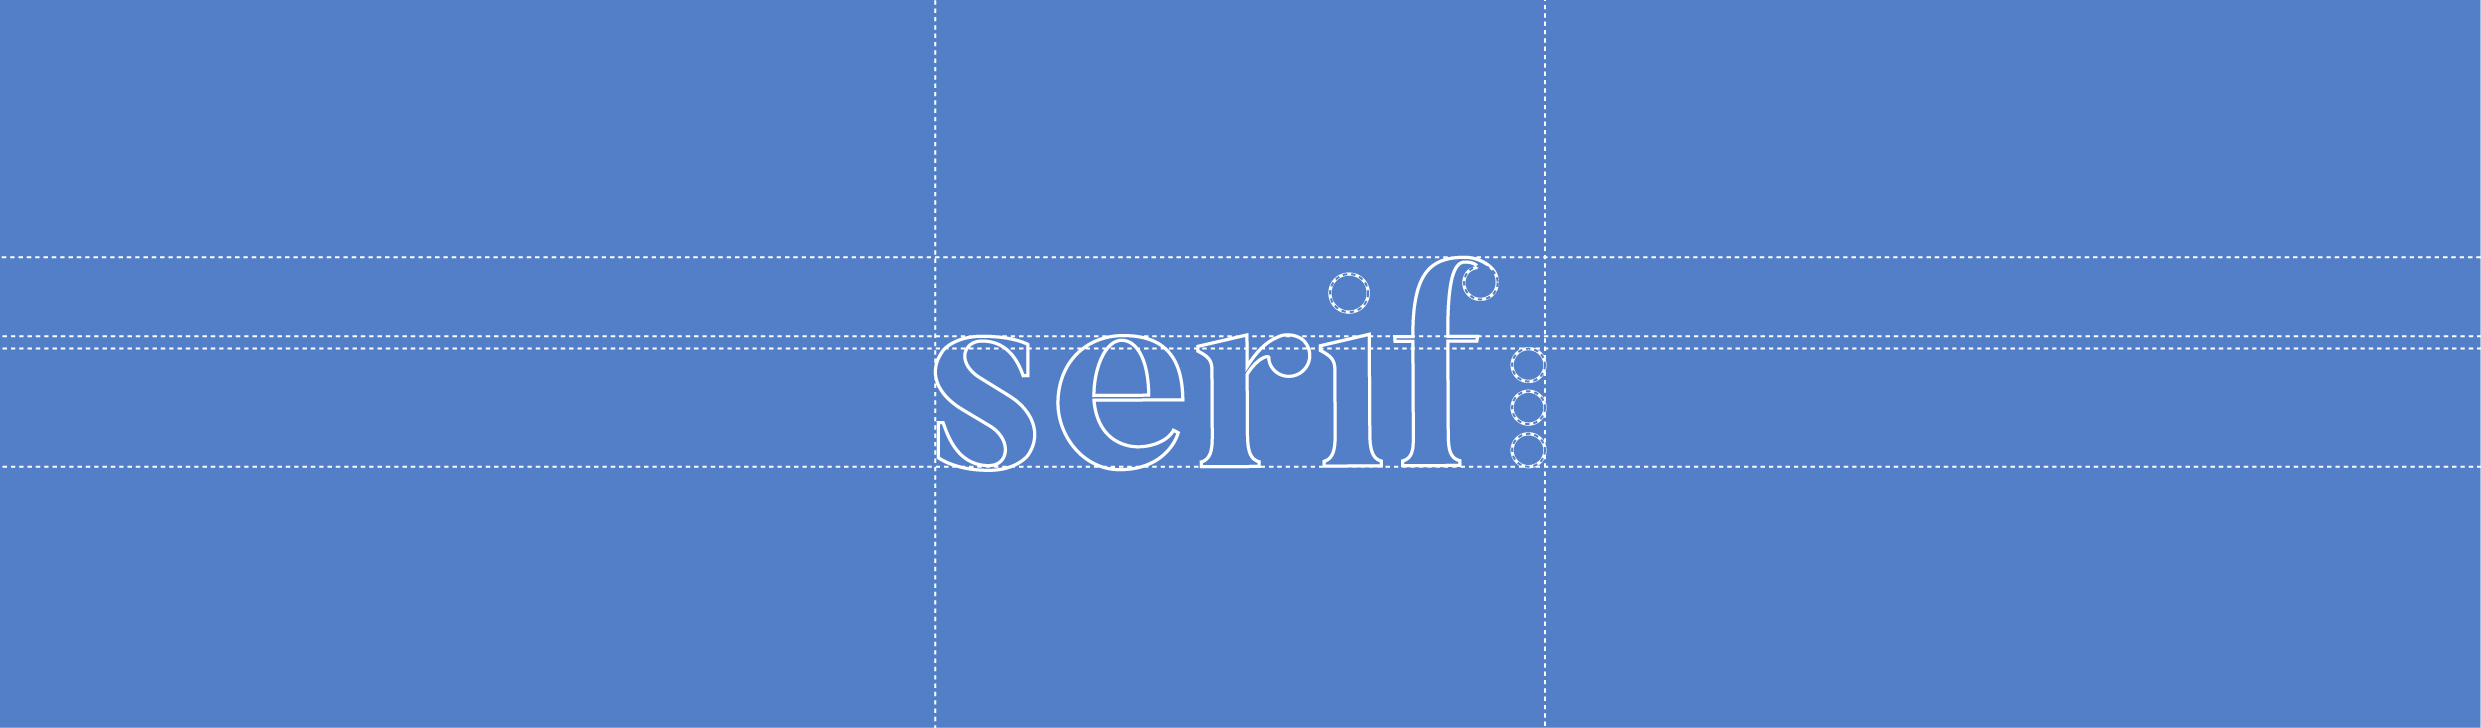 comment-creer-un-logo-professionnel - logo illustrator refonte votre image image de marque typographie